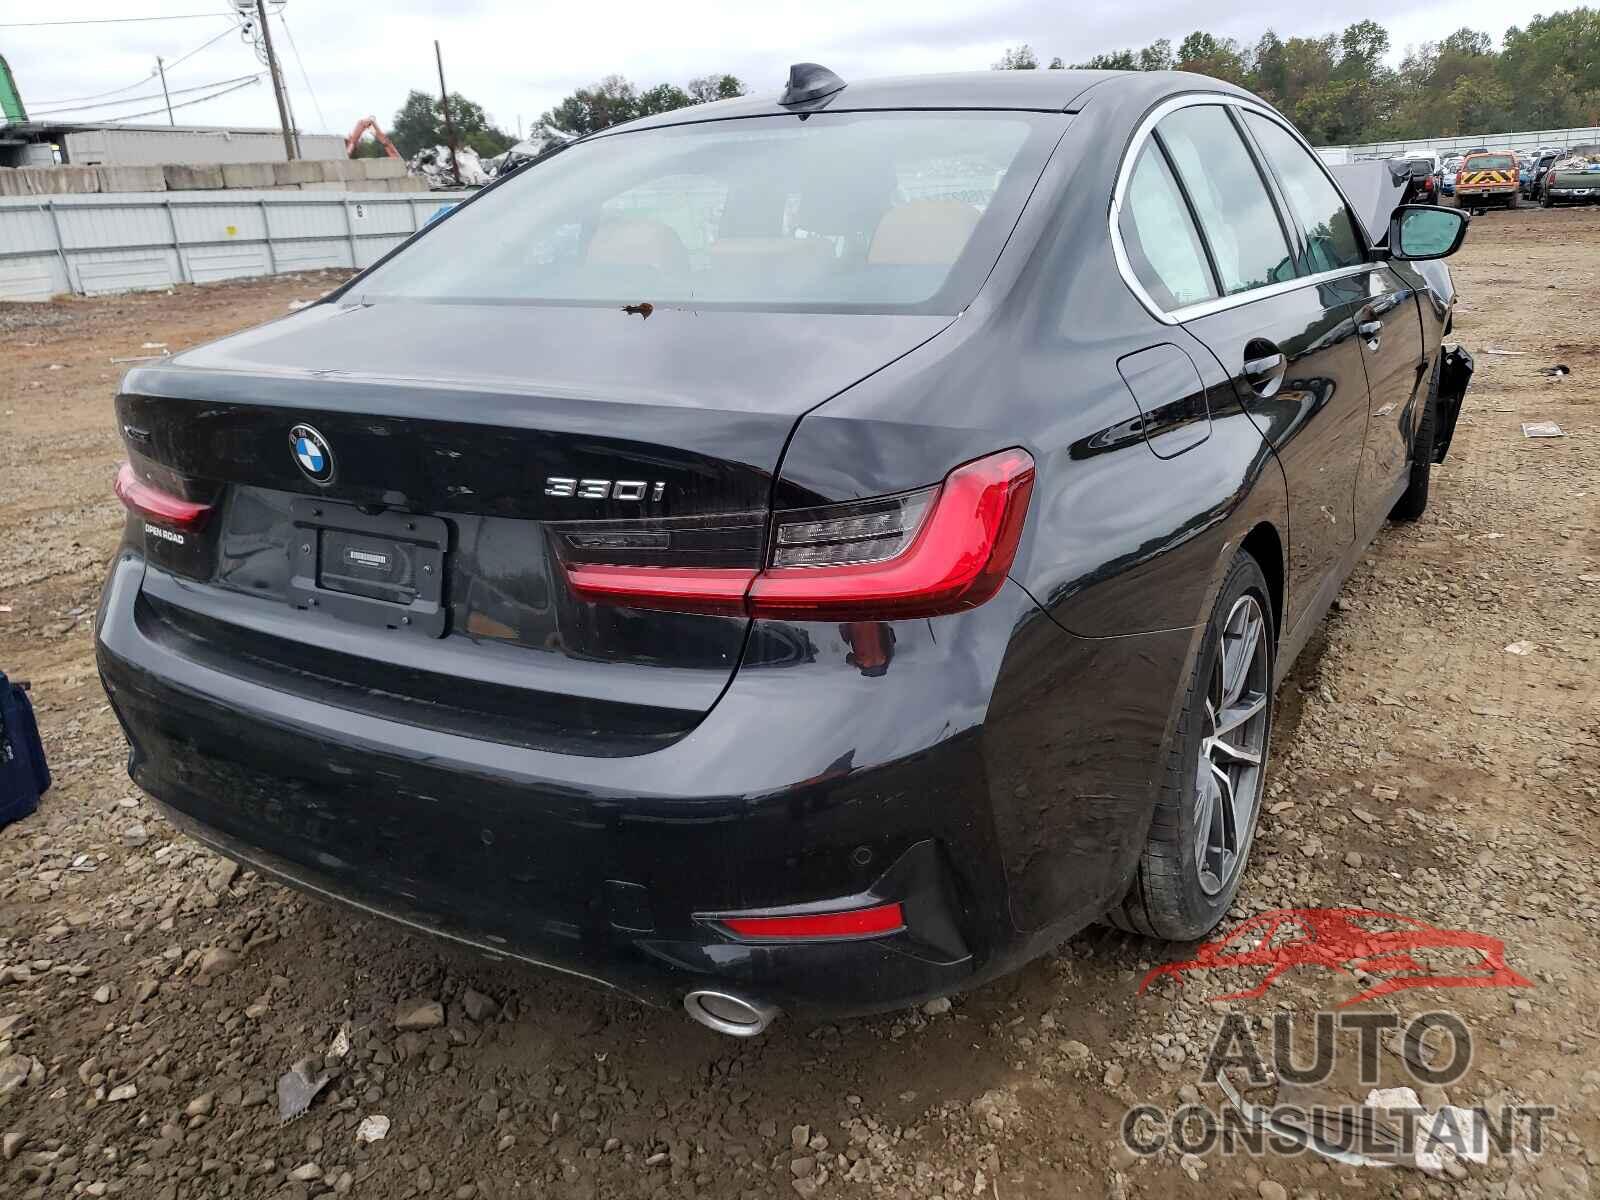 BMW 3 SERIES 2020 - 3MW5R7J08L8B18243